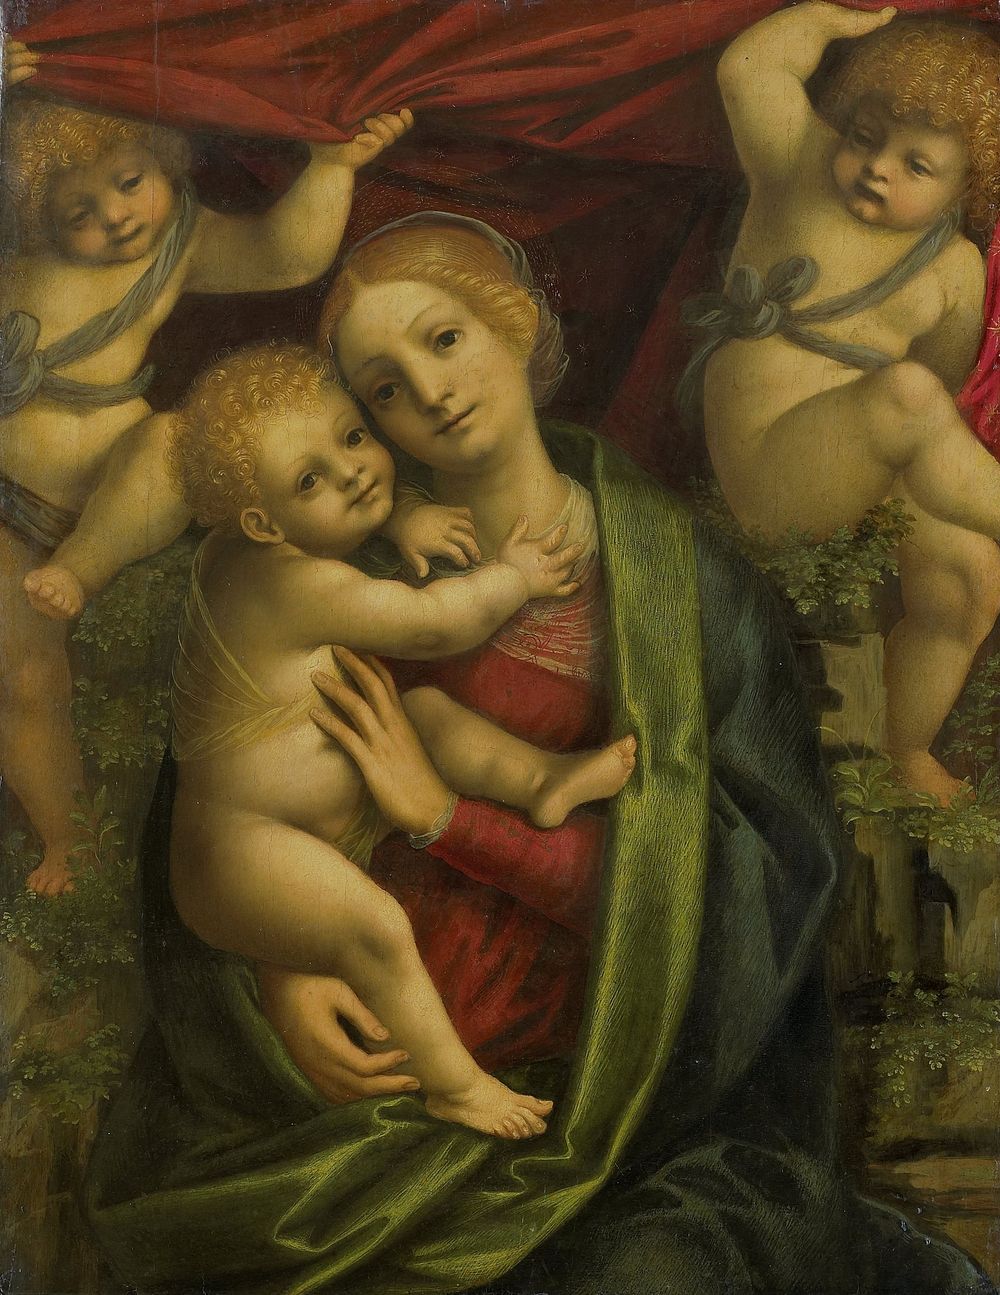 Madonna and Child (1525 - 1535) by Gaudenzio Ferrari and Bernardino Lanino